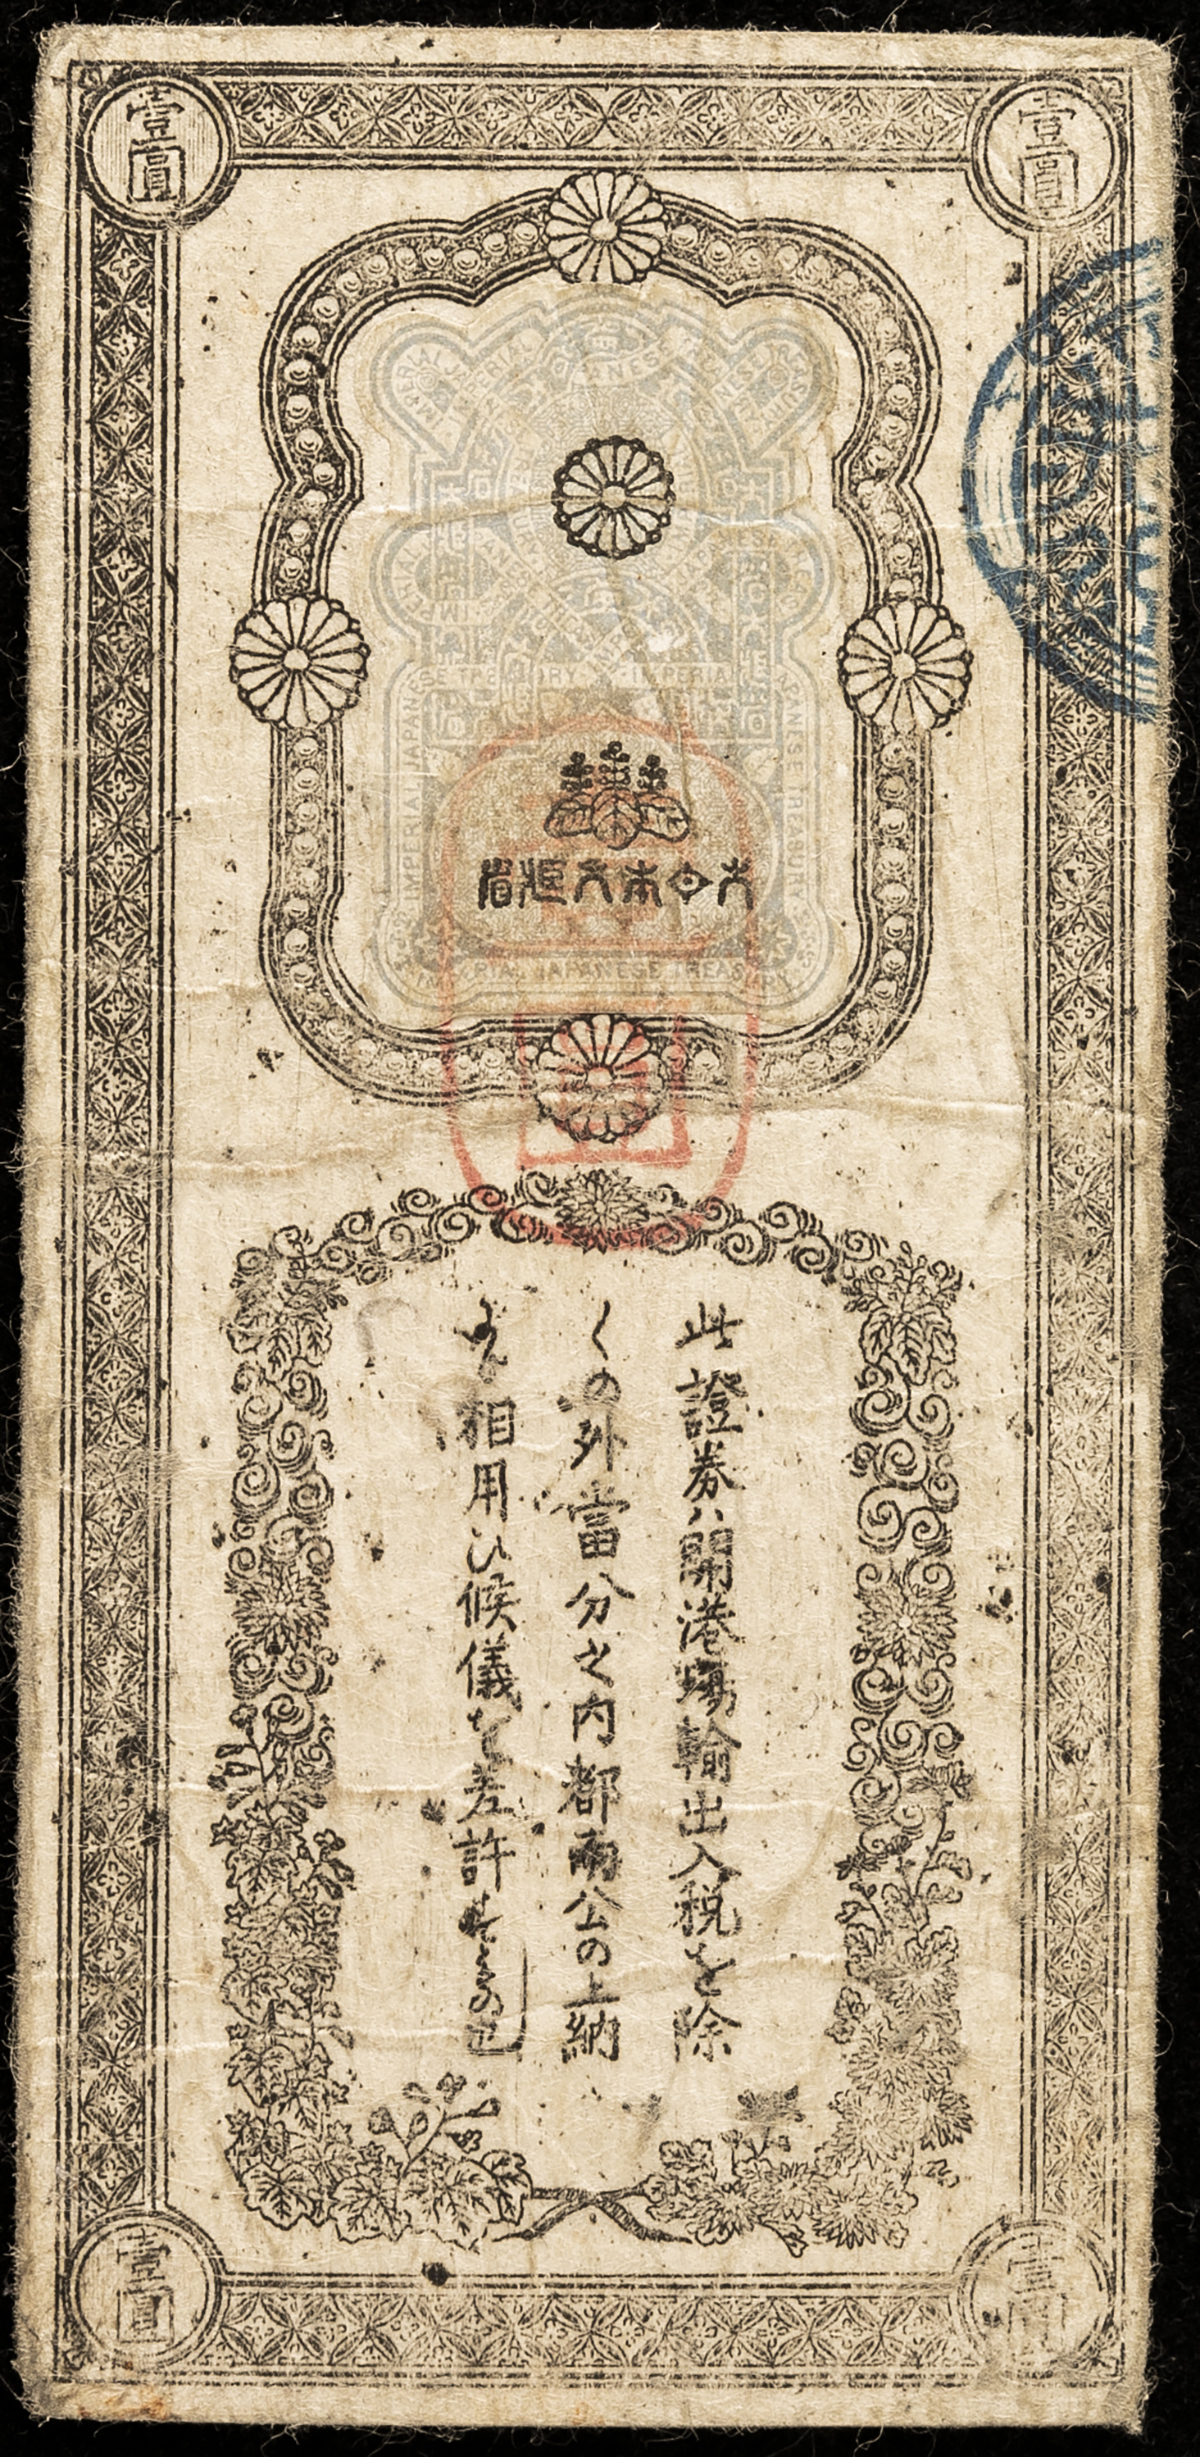 貨幣博物館 | 日本 大蔵省兌換証券金壹圓Okurasho Dakan Shoken Gold 1Yen 明治4年(1871) (VF)美品